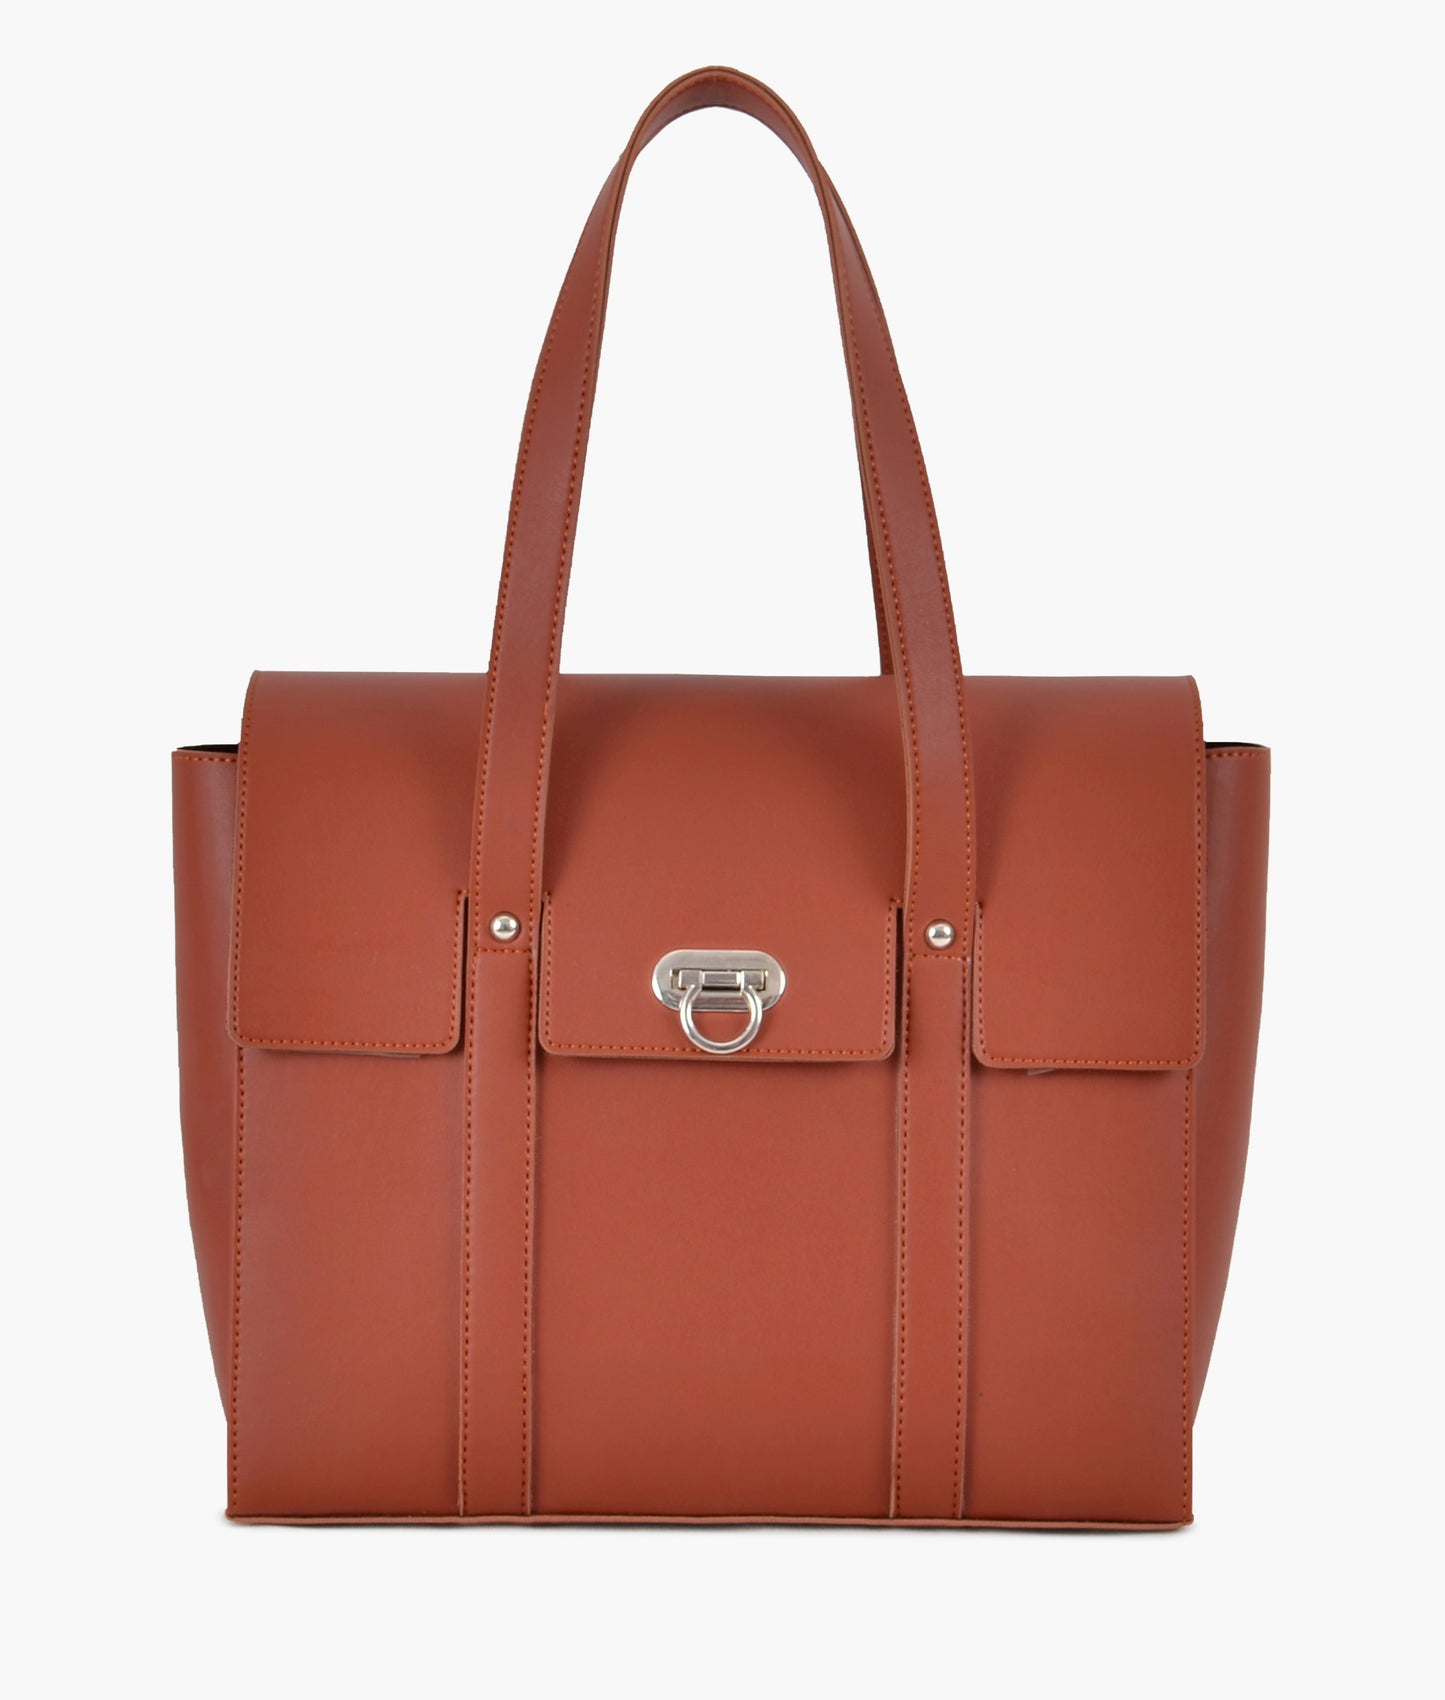 Musterd Handbag For Girls 604